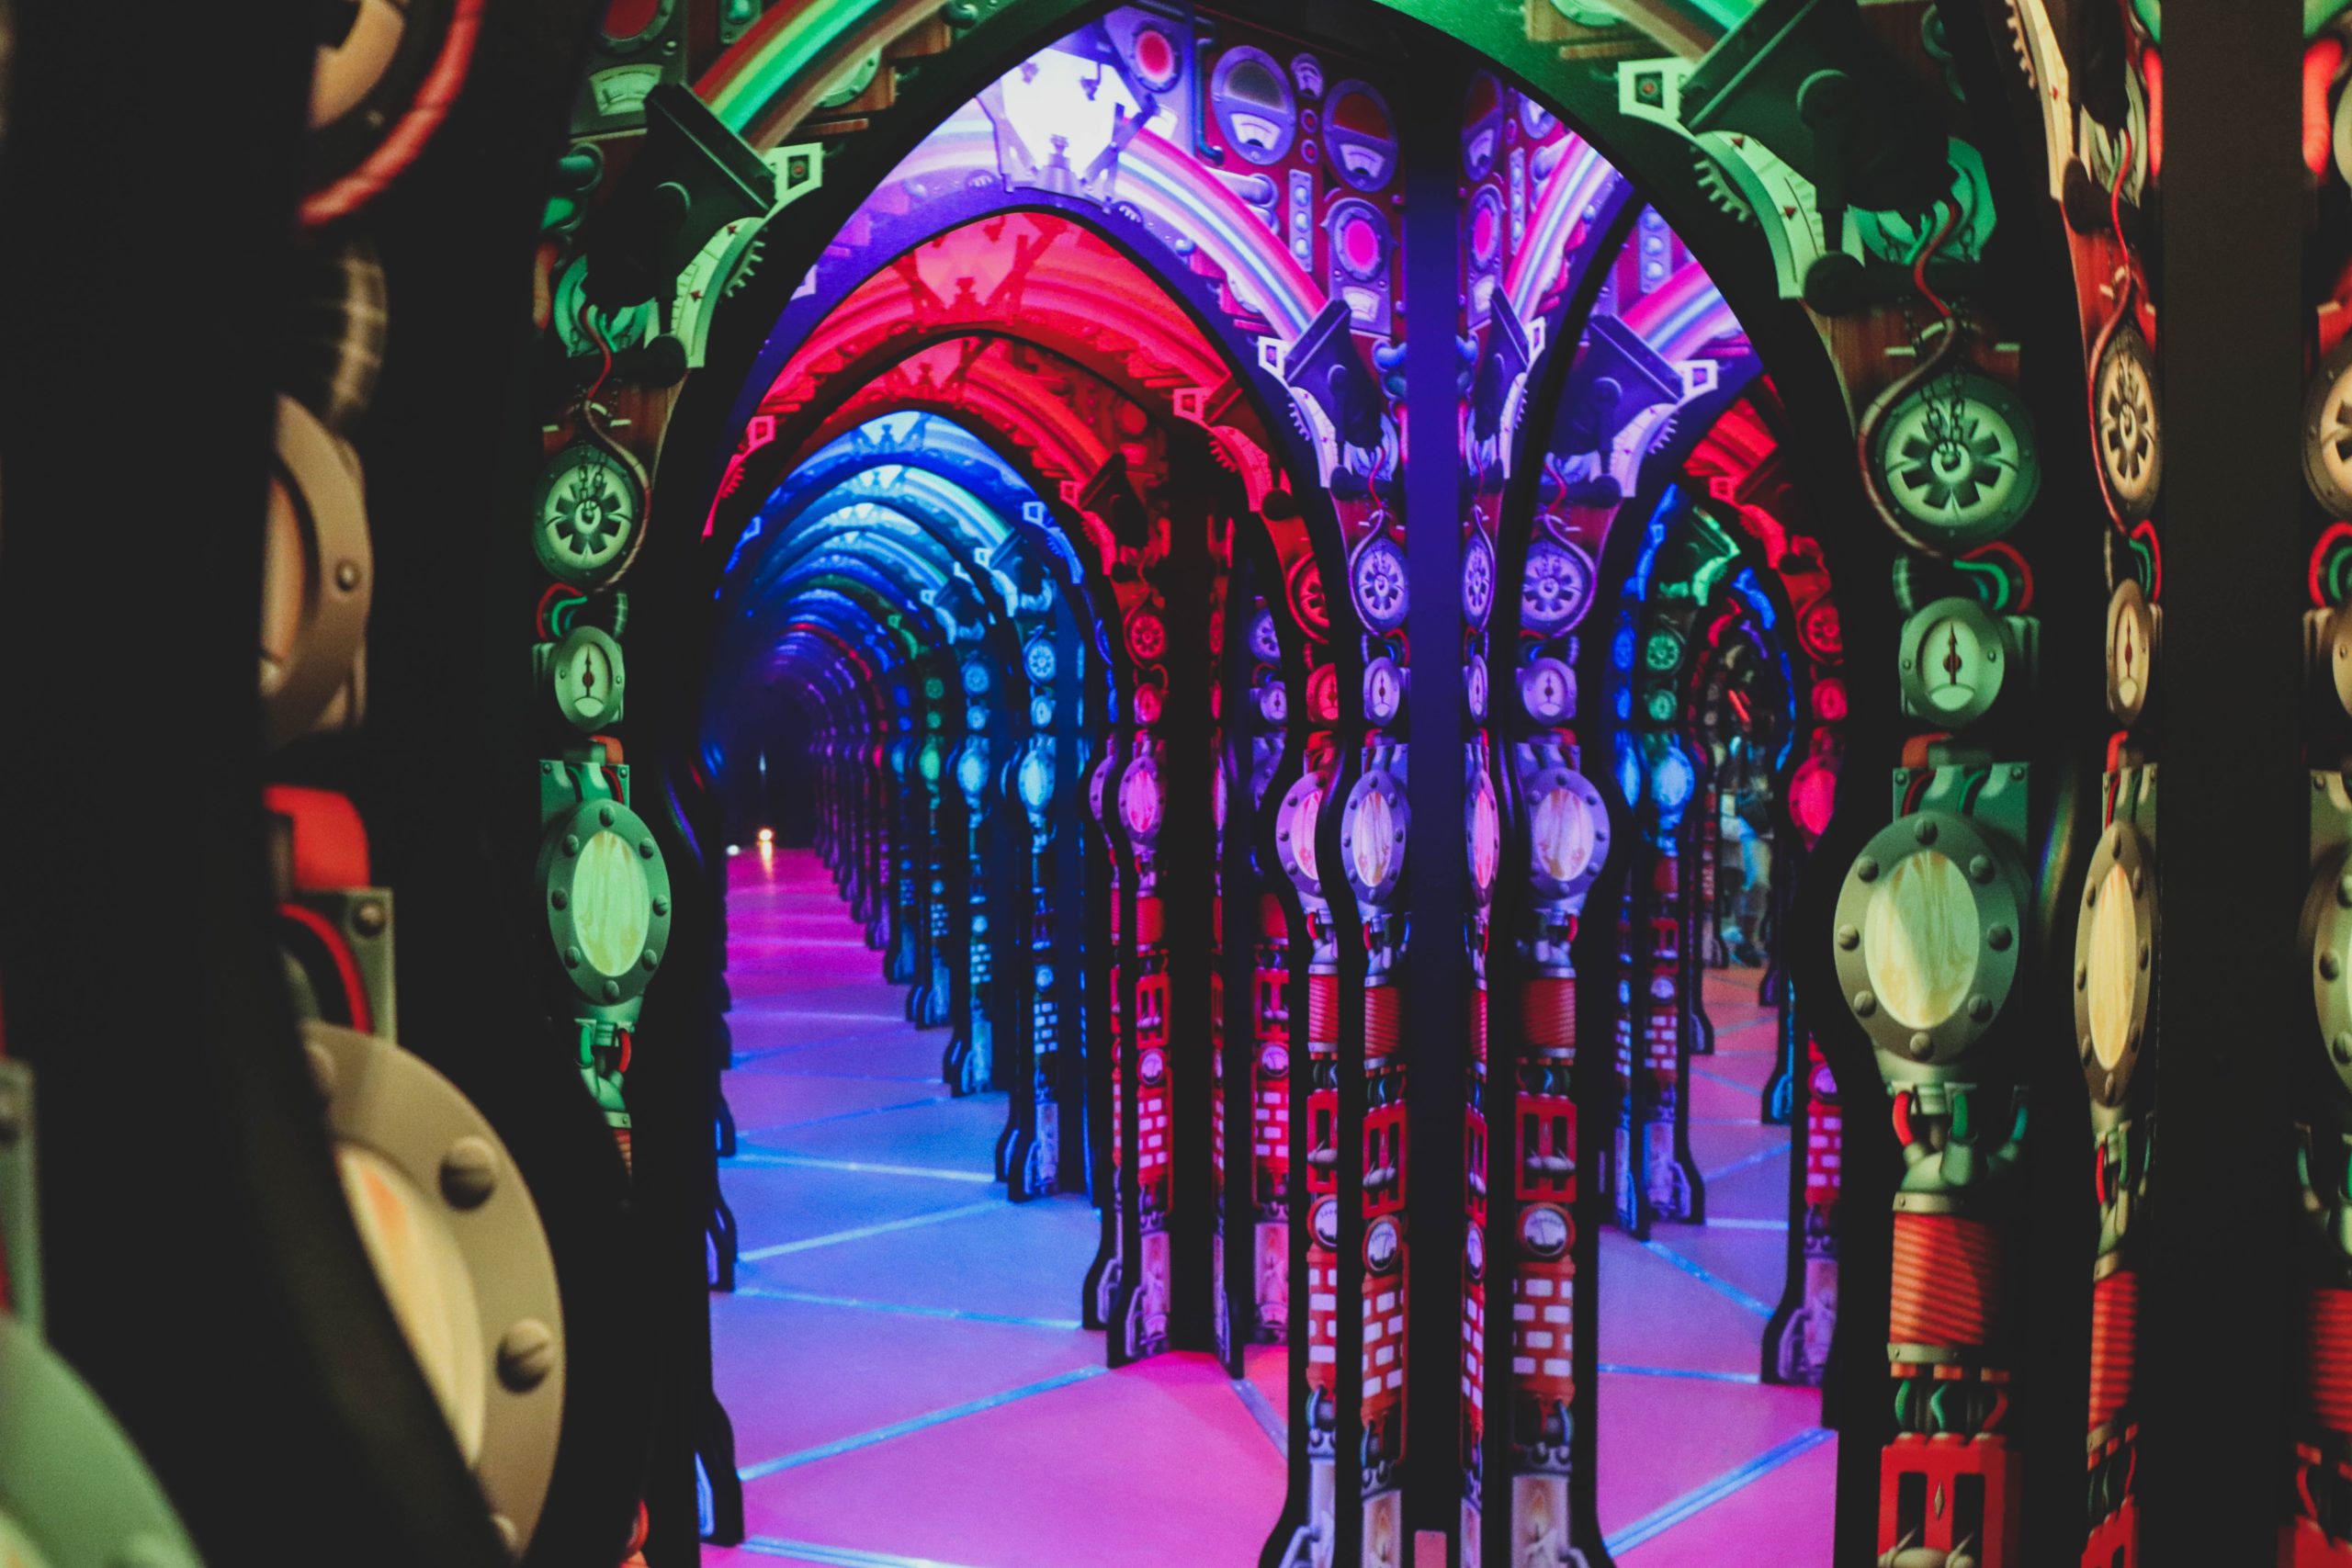 Foto de pavilhão interno do Centro de Ciências de Cingapura. A imagem traz um ambiente multicolorido com vários arcos e espelhos, formando um mosaico de cores vívidas e formas arqueadas.